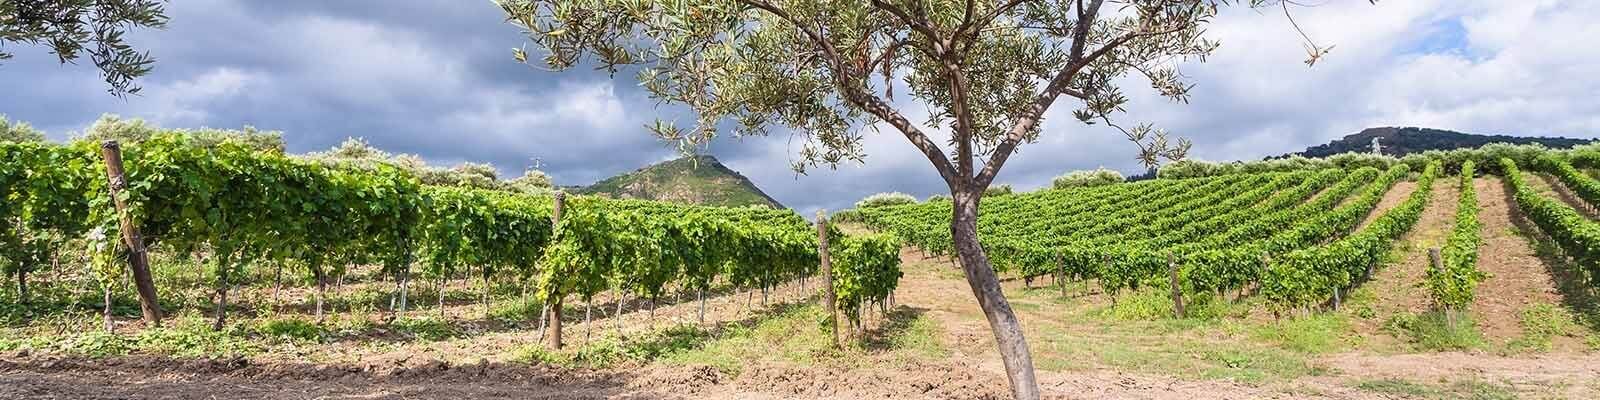 La nostra collezione di Sicilia - Trovatelo da Onshore Cellars, il vostro fornitore di vini per yacht